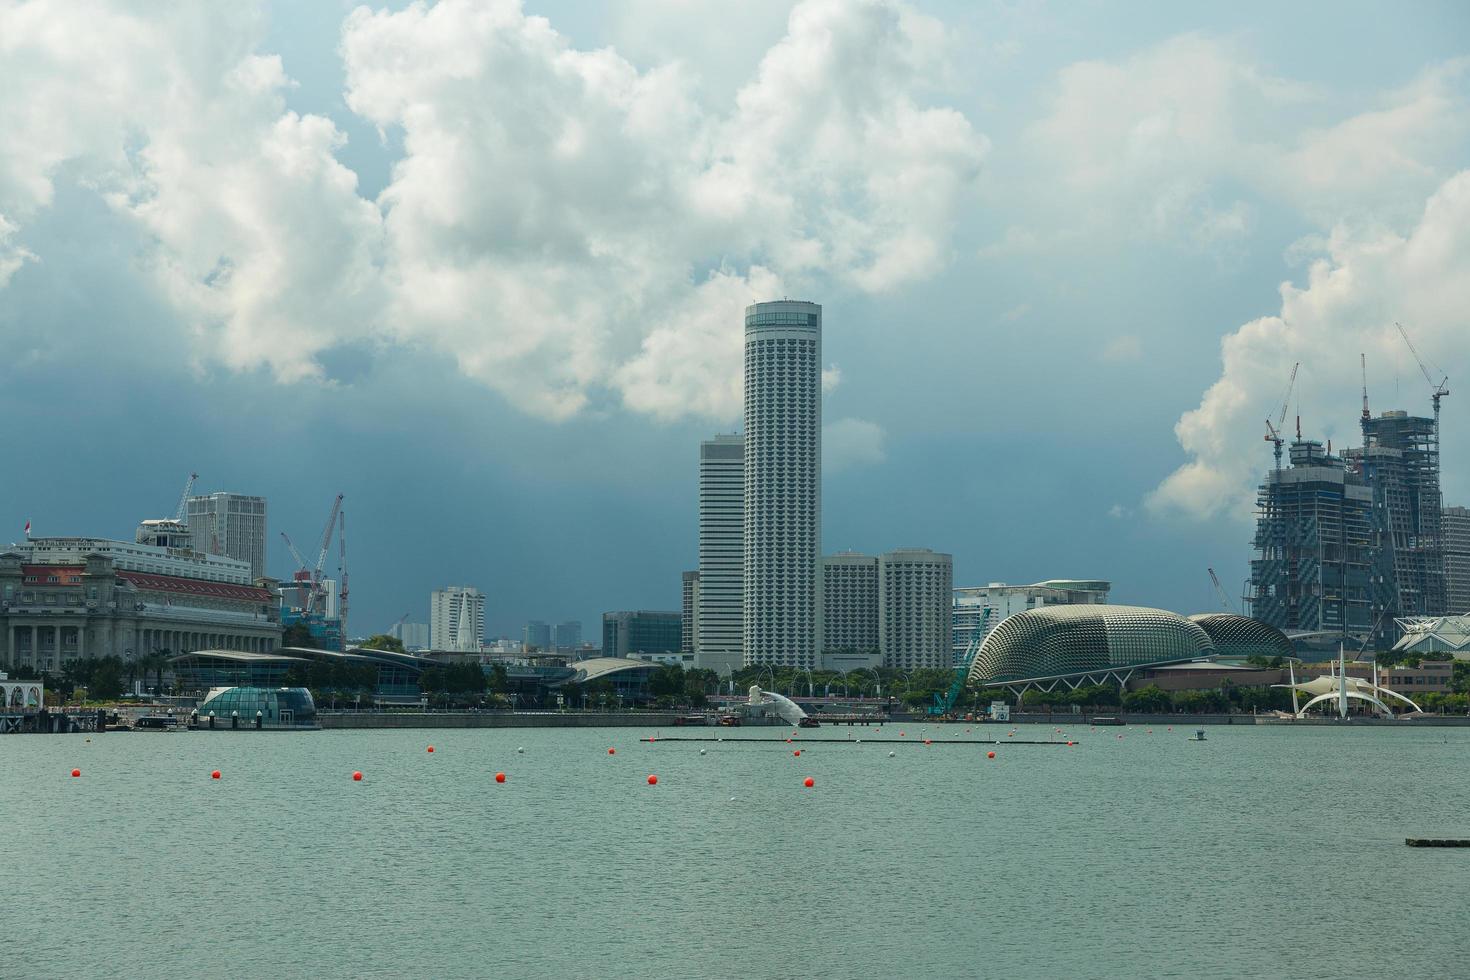 byggnader i singapores skyline foto